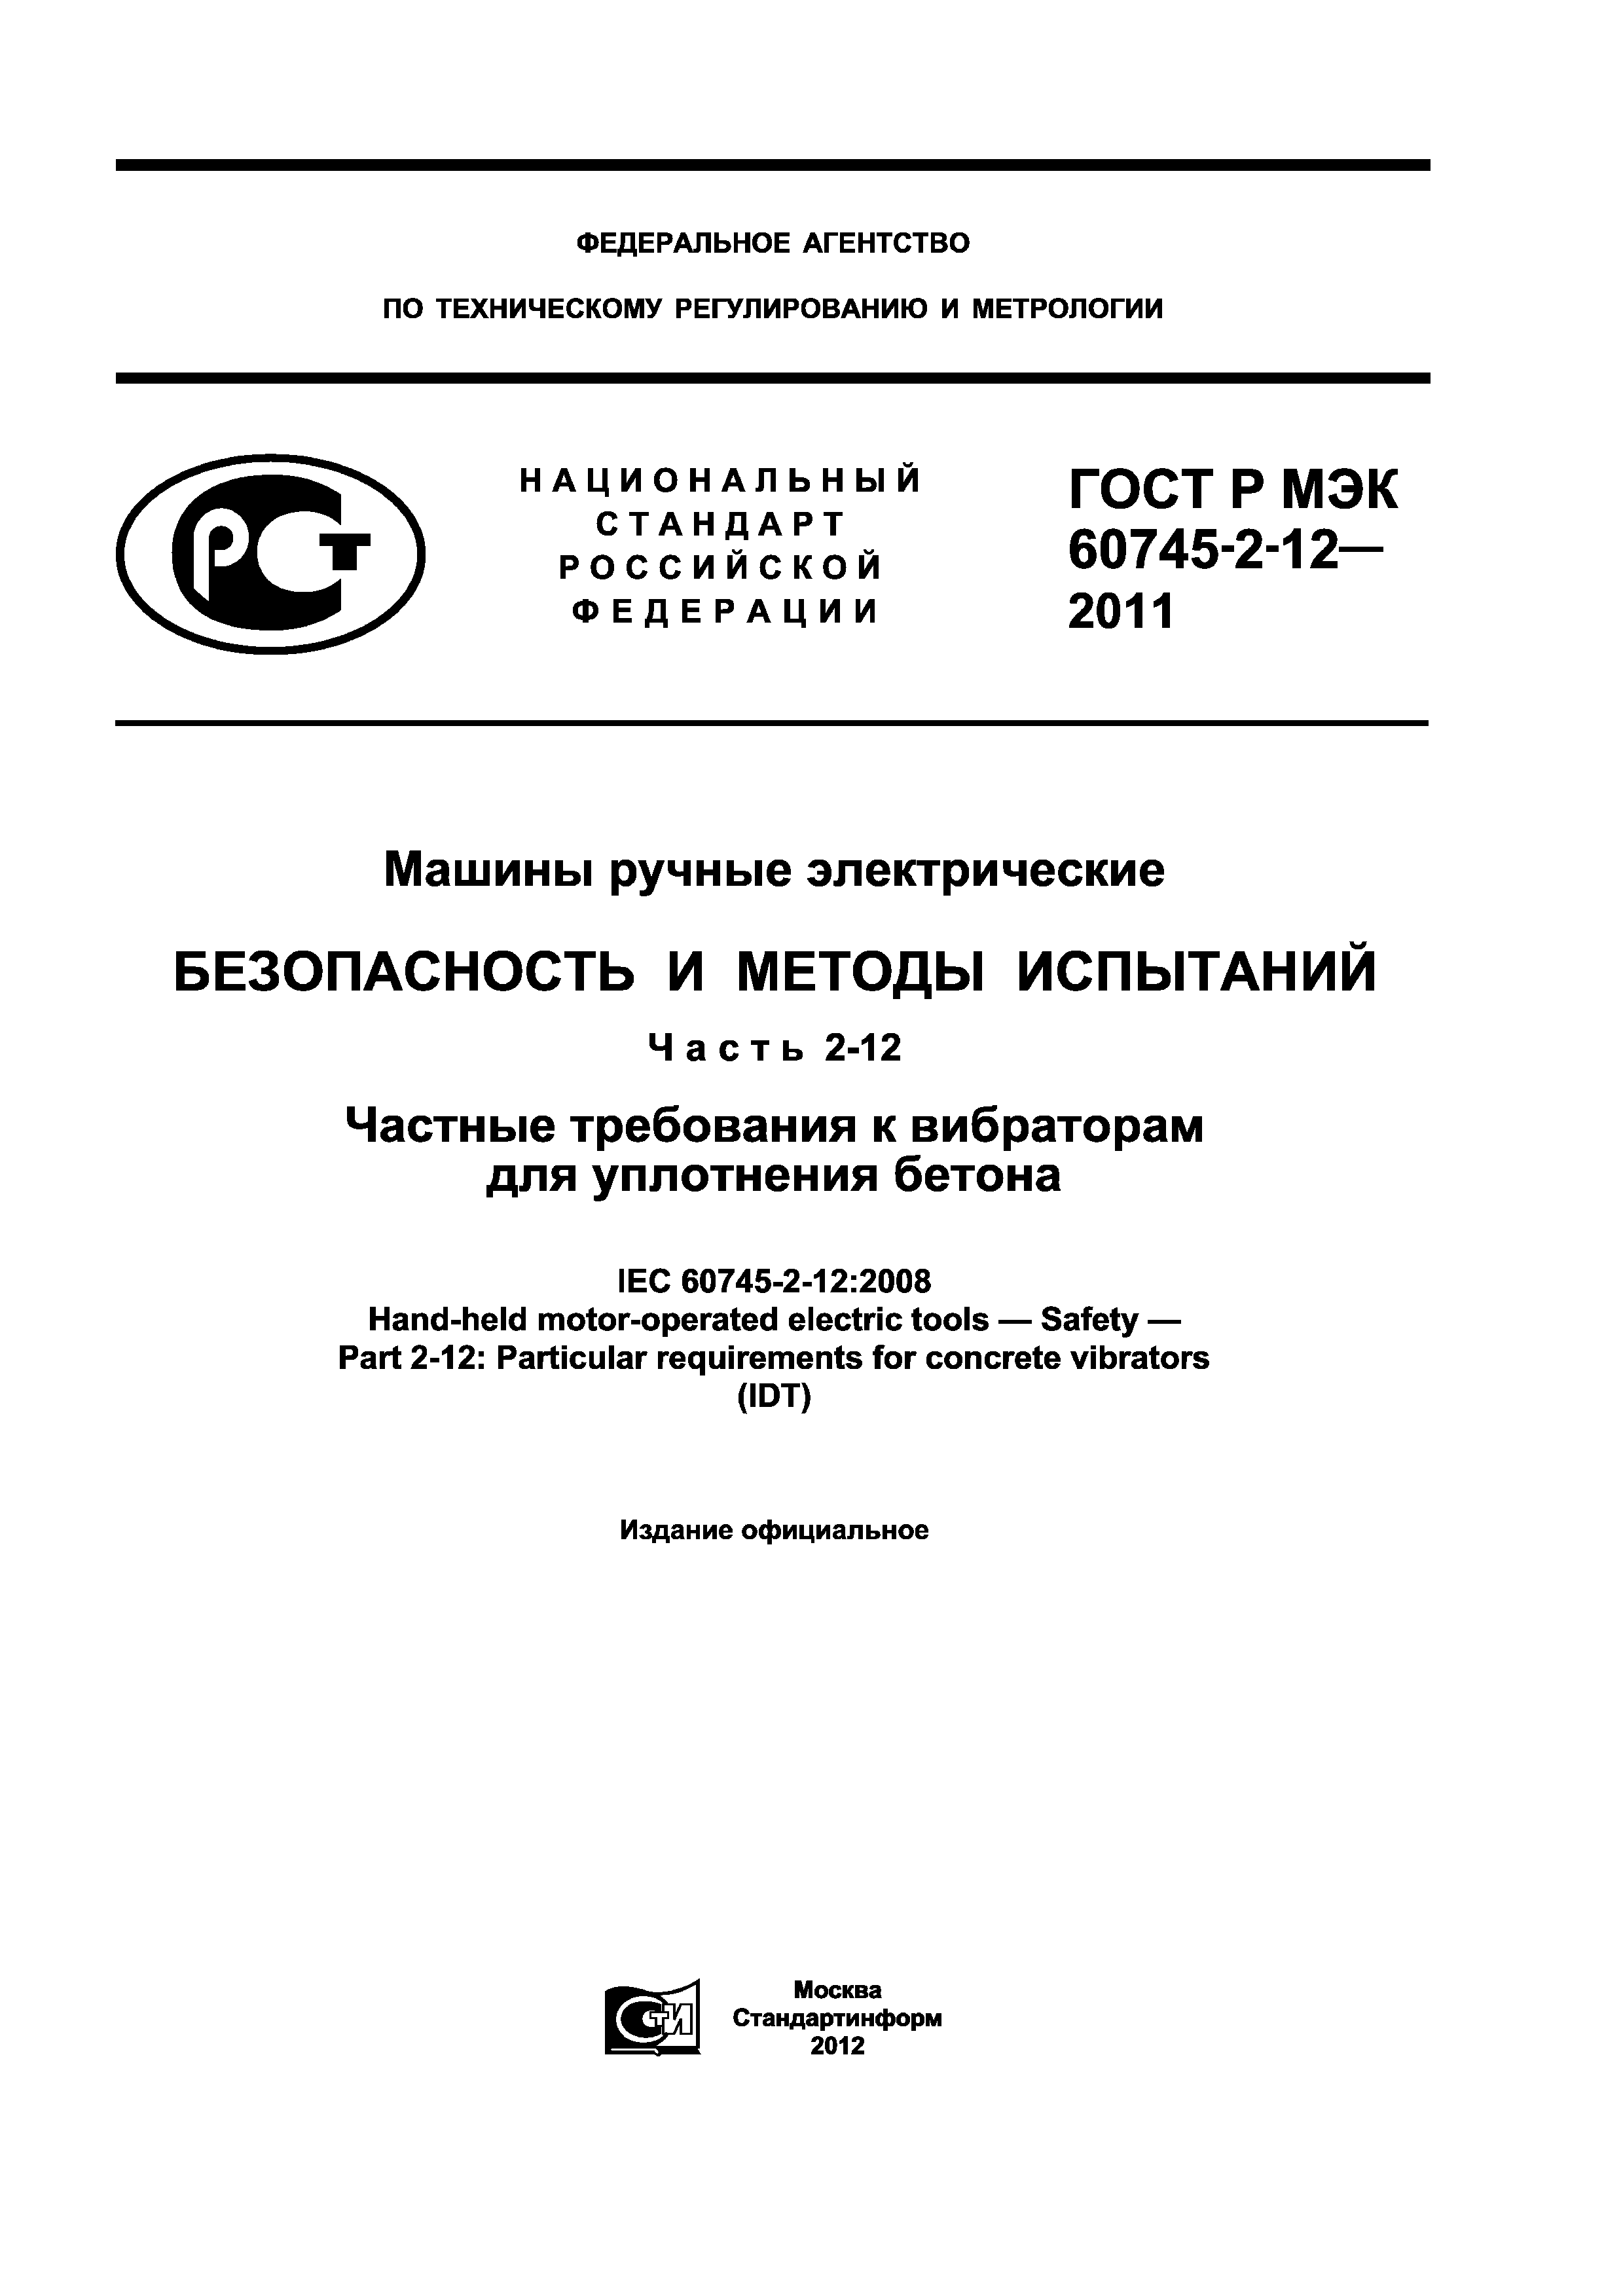 ГОСТ Р МЭК 60745-2-12-2011